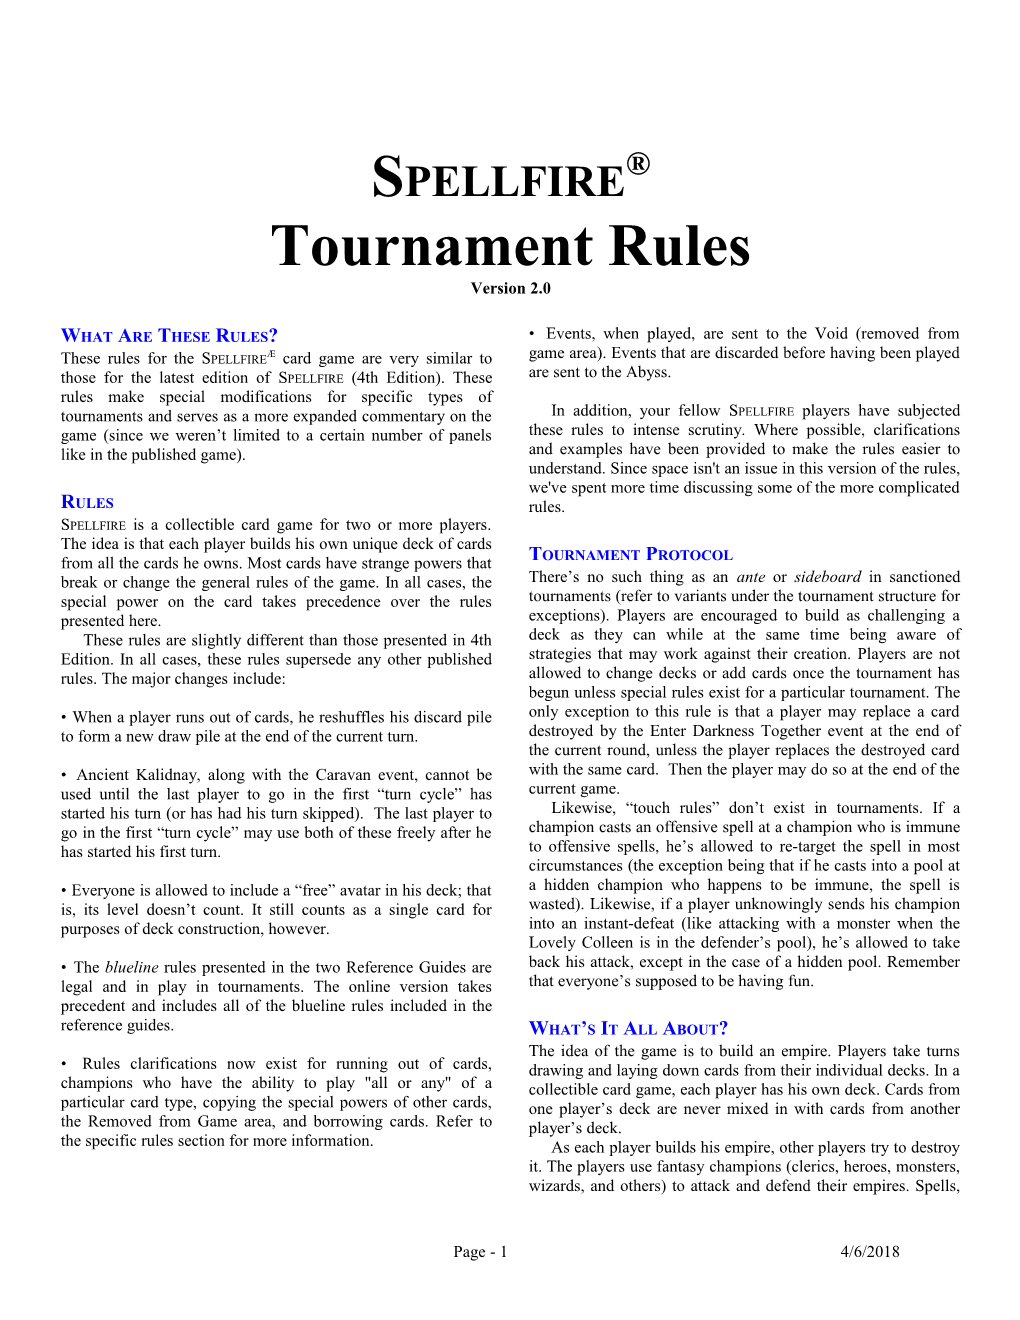 Spellfire Rules, Version 2.0